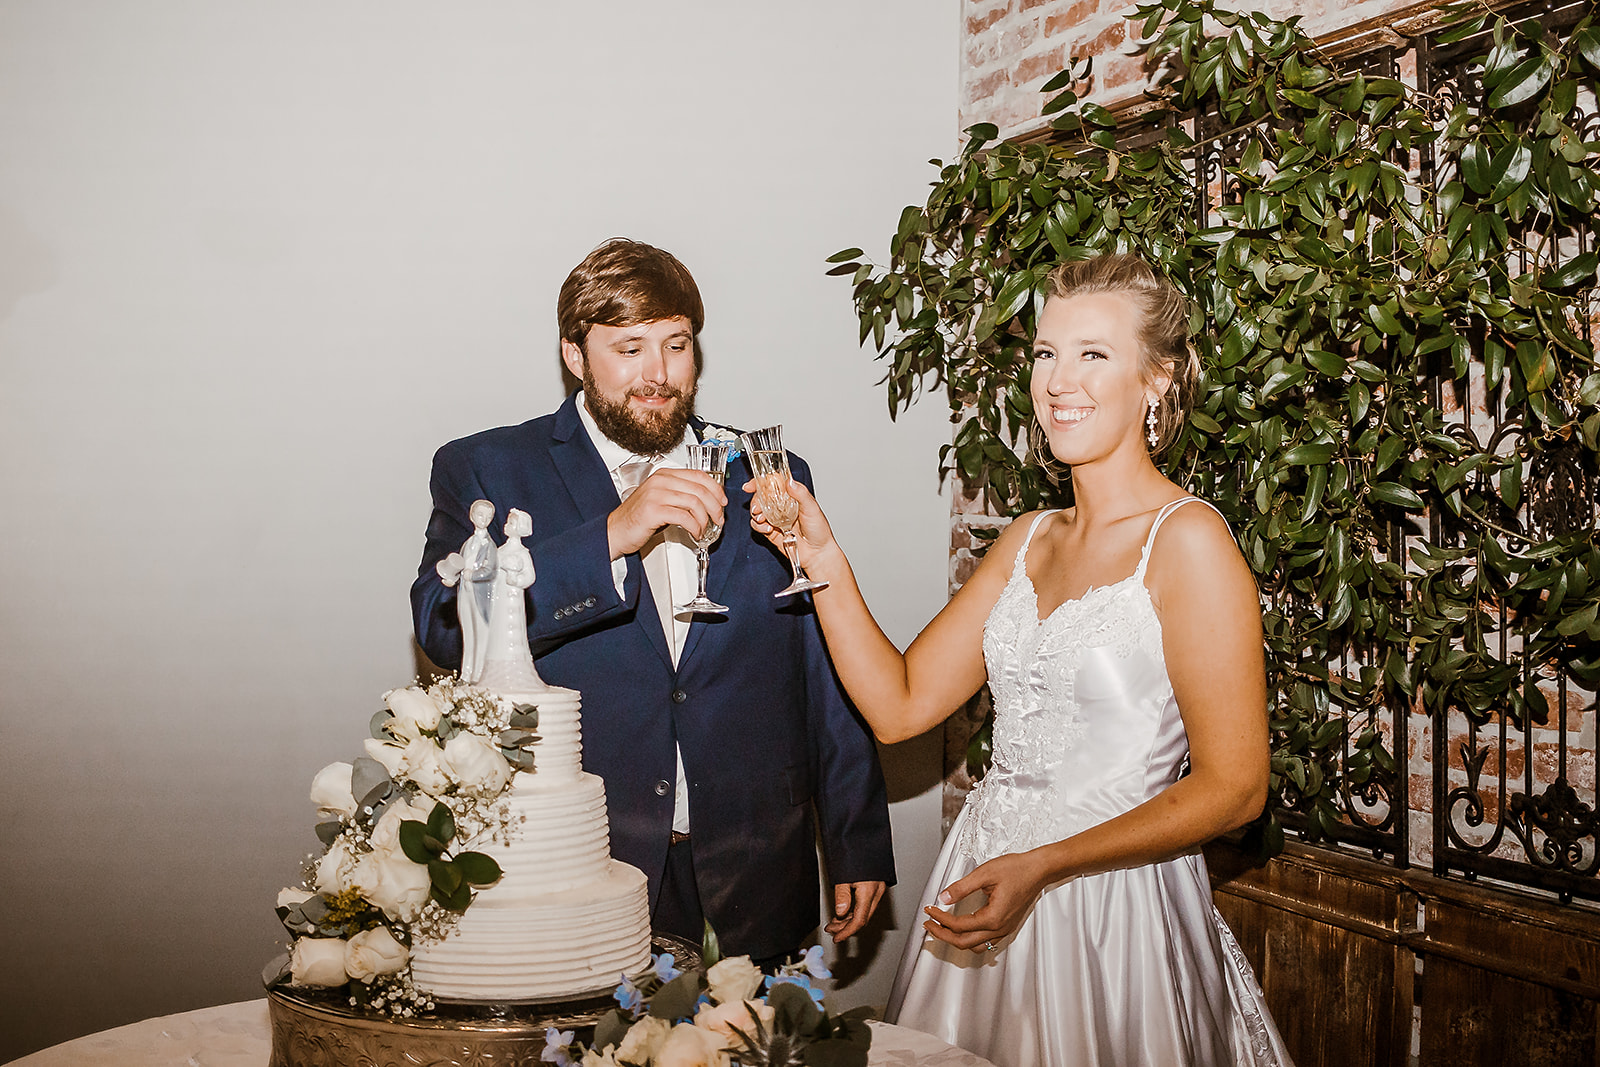 Kennedy & Tyler - Fairhope, AL Wedding - The Millers Photo Co